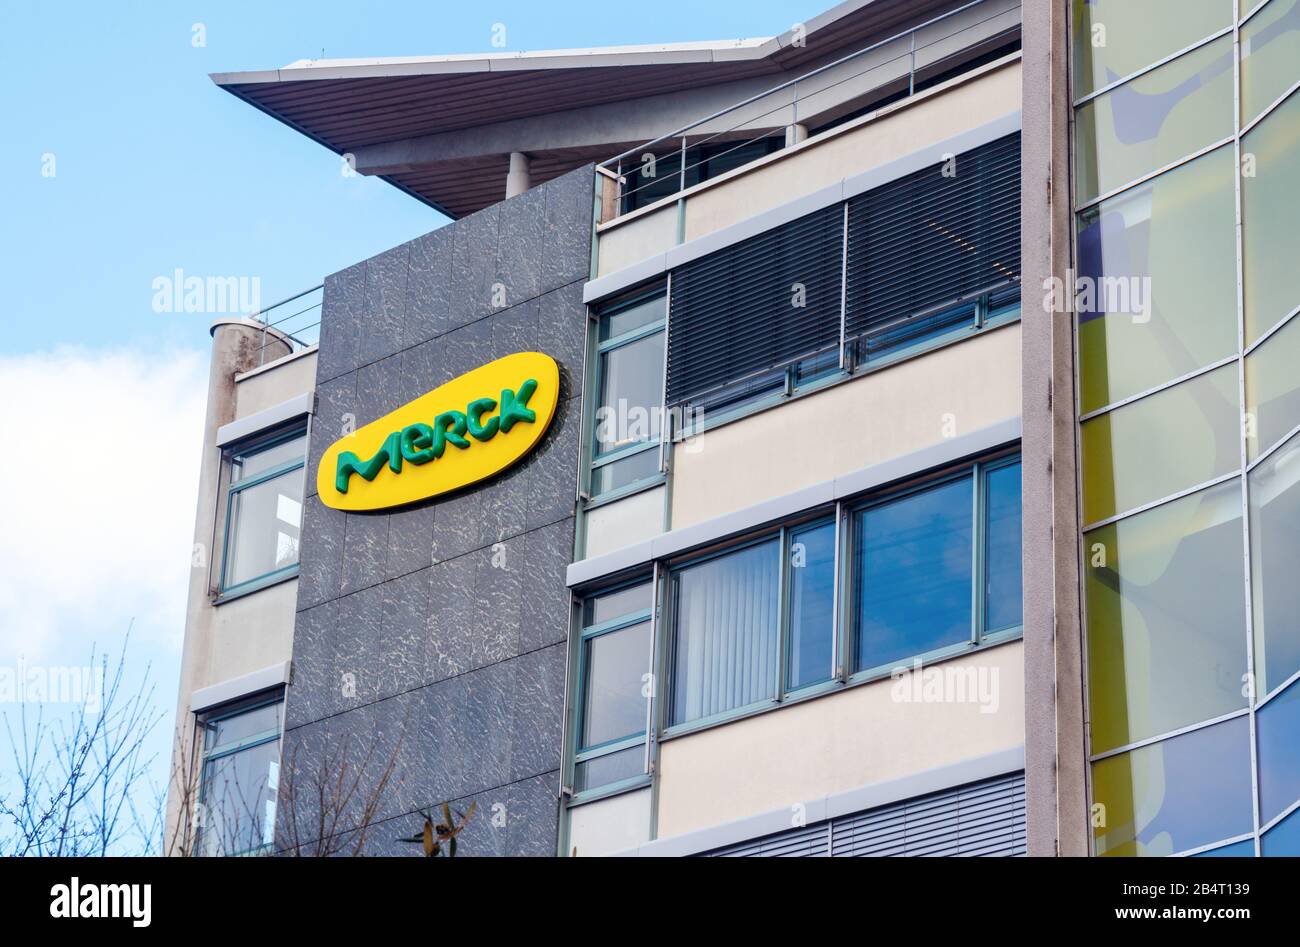 Logo jaune vert Merck au mur d'un immeuble de bureaux Merck. Merck est l'une des plus grandes entreprises pharmaceutiques au monde. Darmstadt, Allemagne. Banque D'Images